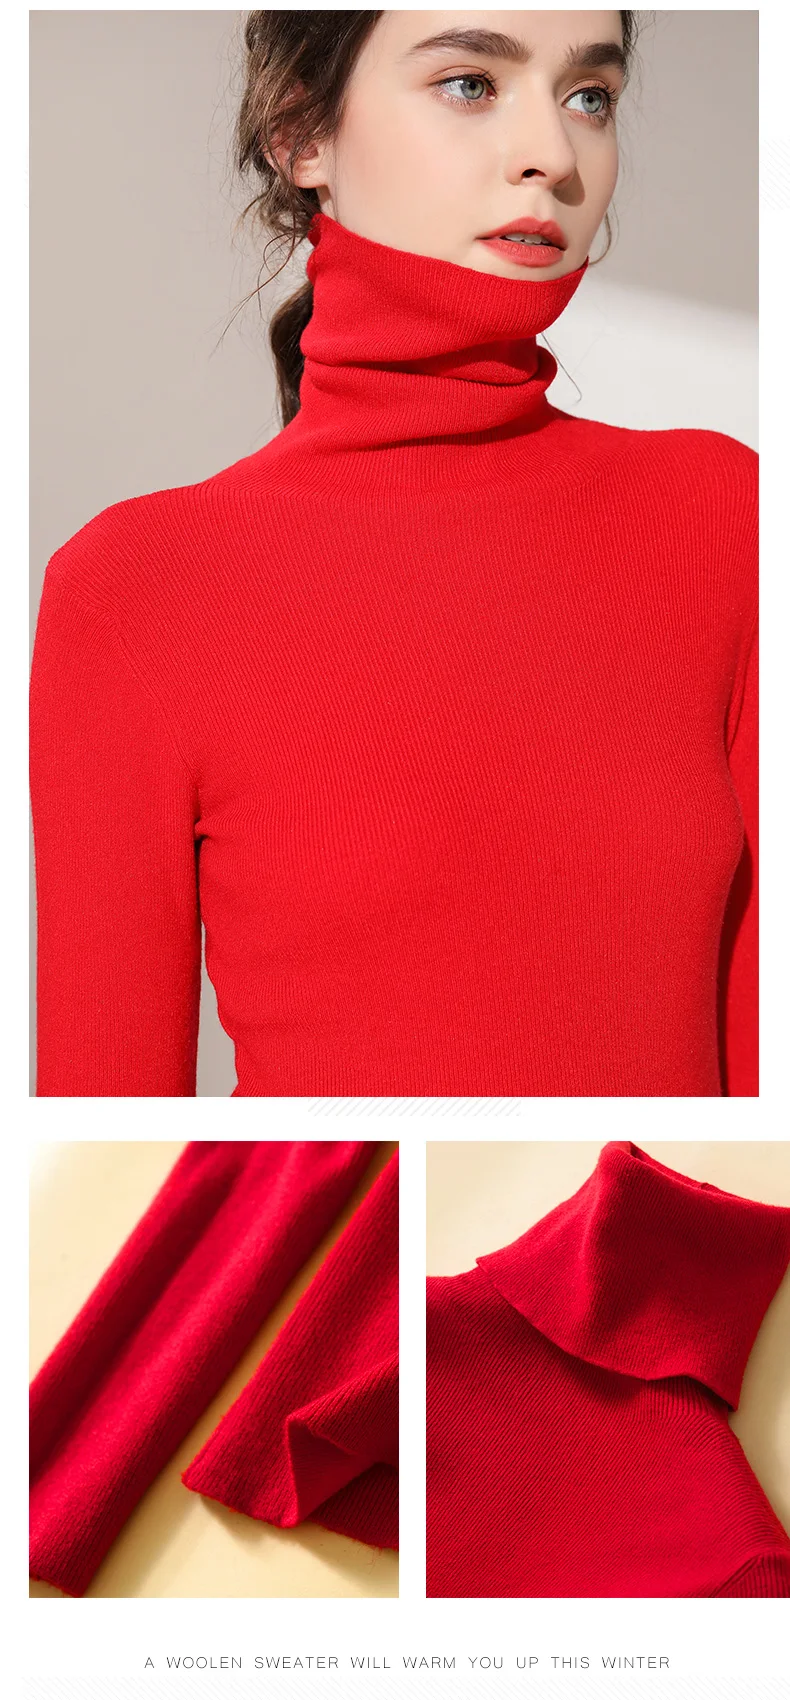 Lafarvie тонкий вязаный свитер из смеси на основе кашемира женские топы Водолазка с длинным рукавом теплый пуловер Женский вязаный джемпер 5 цветов